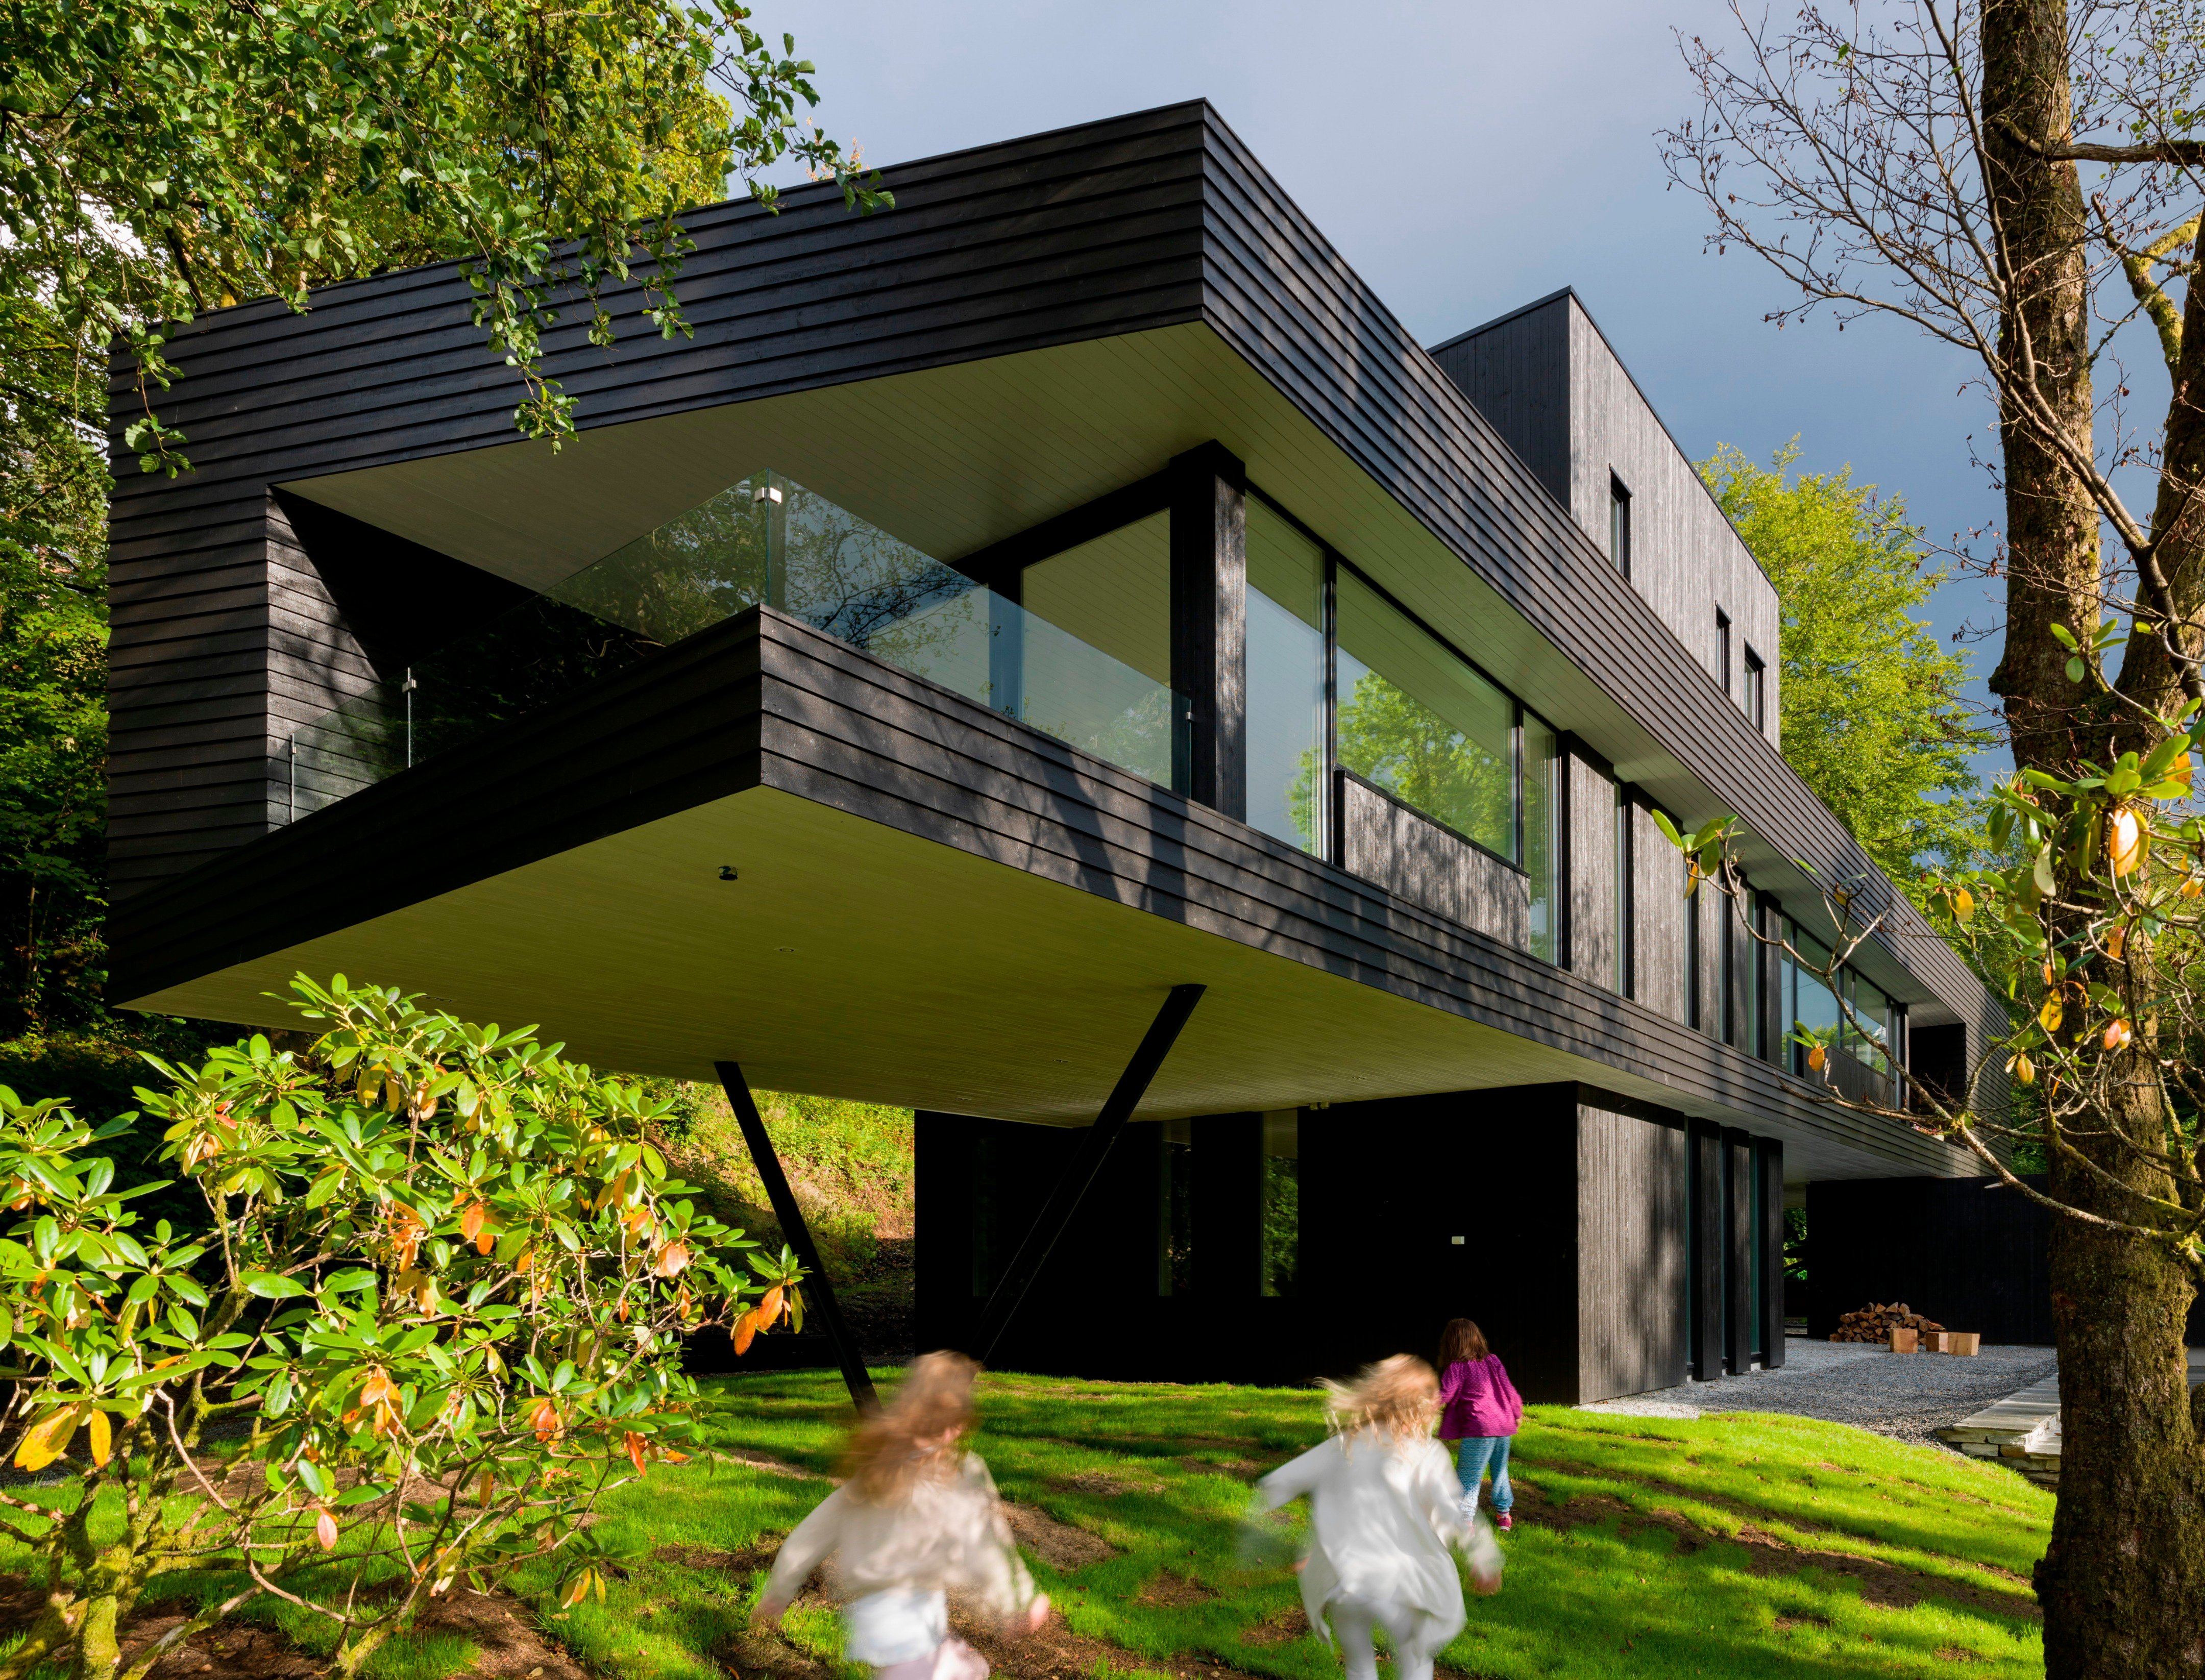 Архитектор необычного дома. Загородная вилла в Норвегии от Saunders Architecture. Villa s Тодда Сондерса, Норвегия. Тодд Сондерс Архитектор. Хай тек дом в Норвегии.